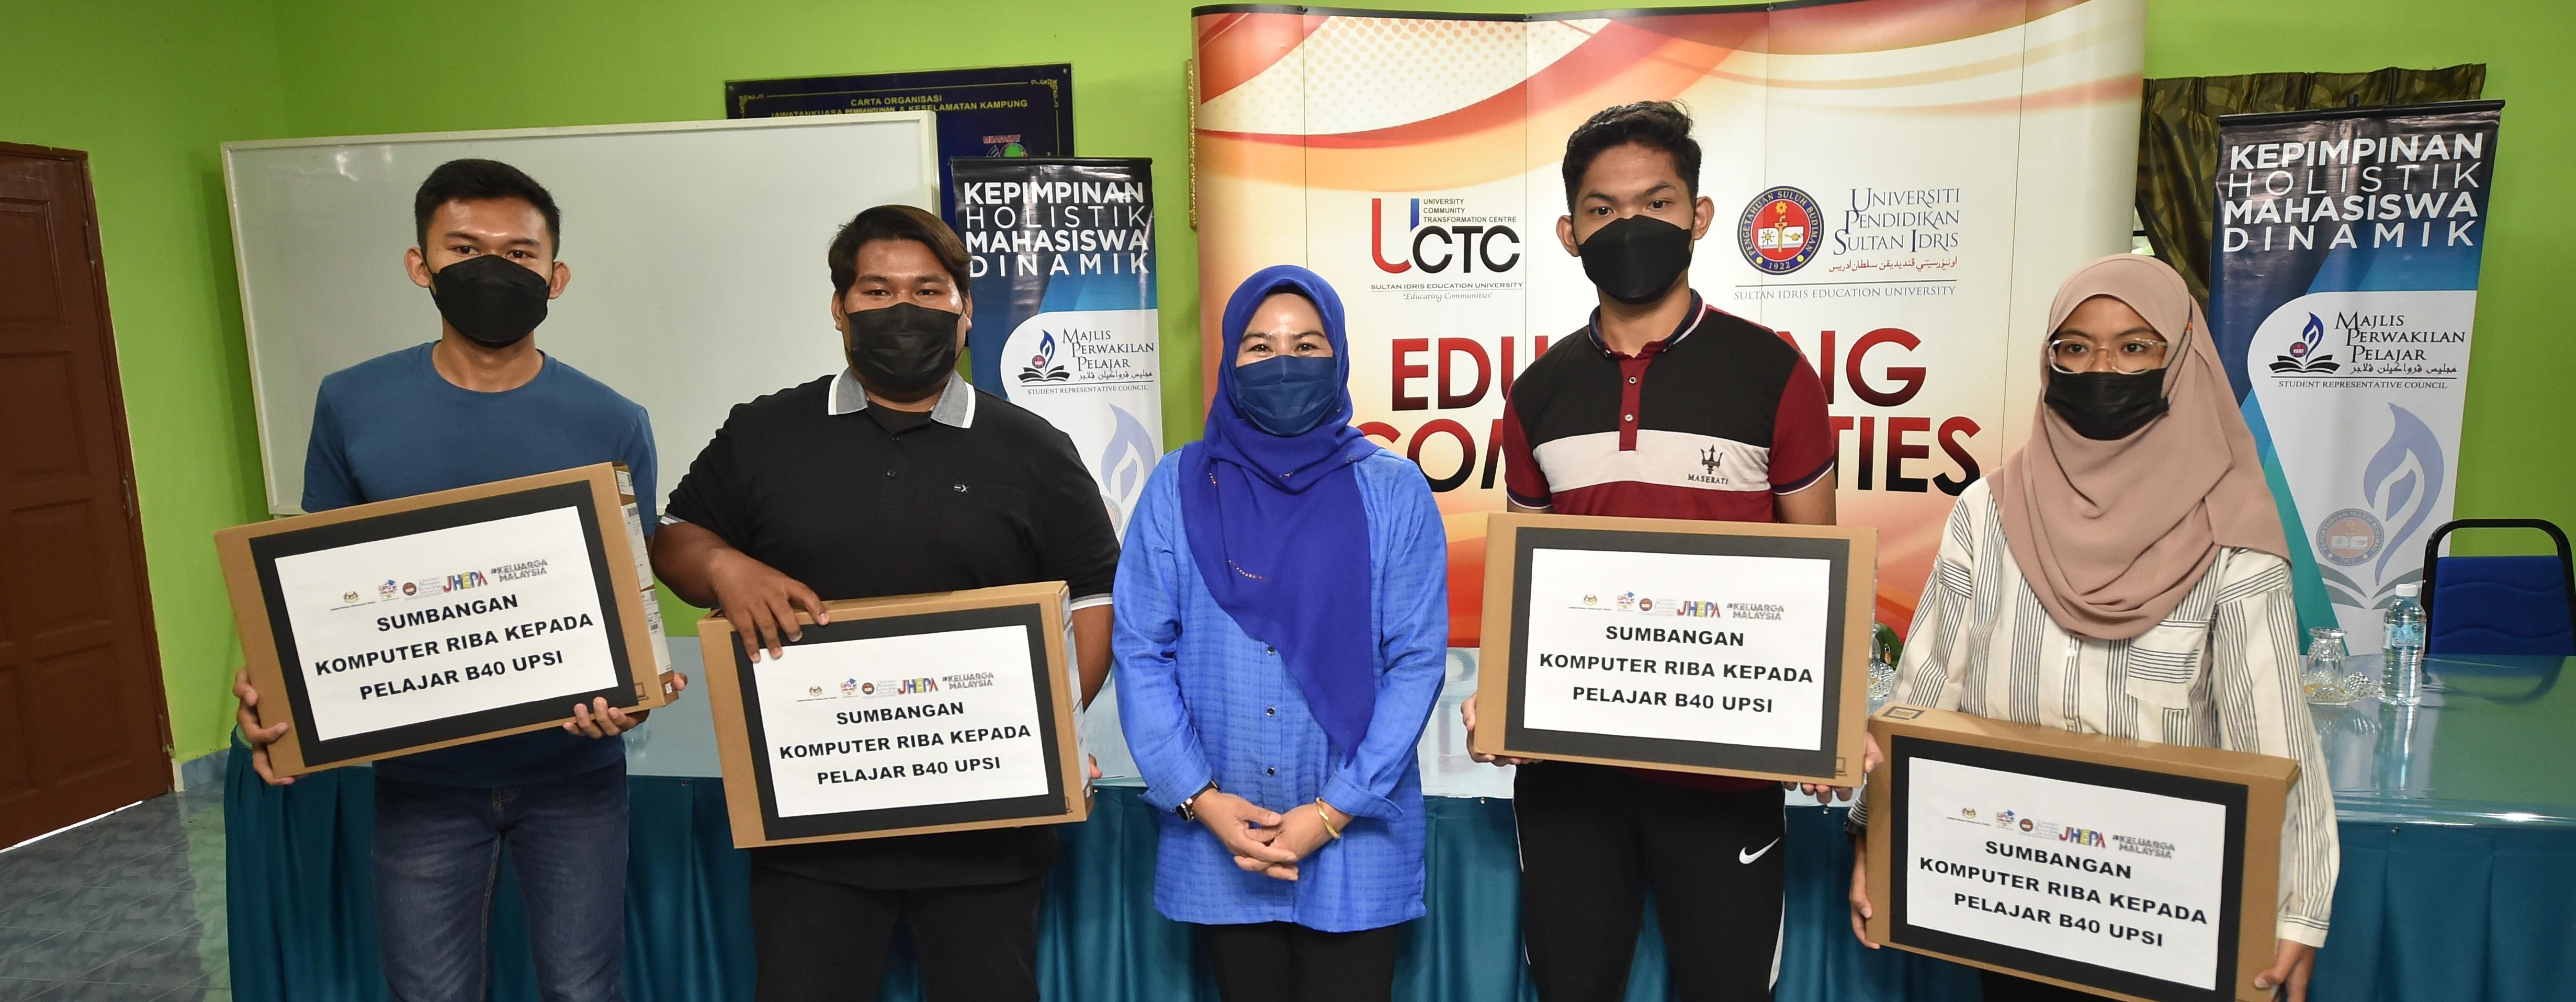 Majlis Perasmian Program UPSI Smart Home Schooling Mesra dan Penyampaian Sumbangan Komputer Riba kepada pelajar B40 UPSI di Batu Pahat, Johor.